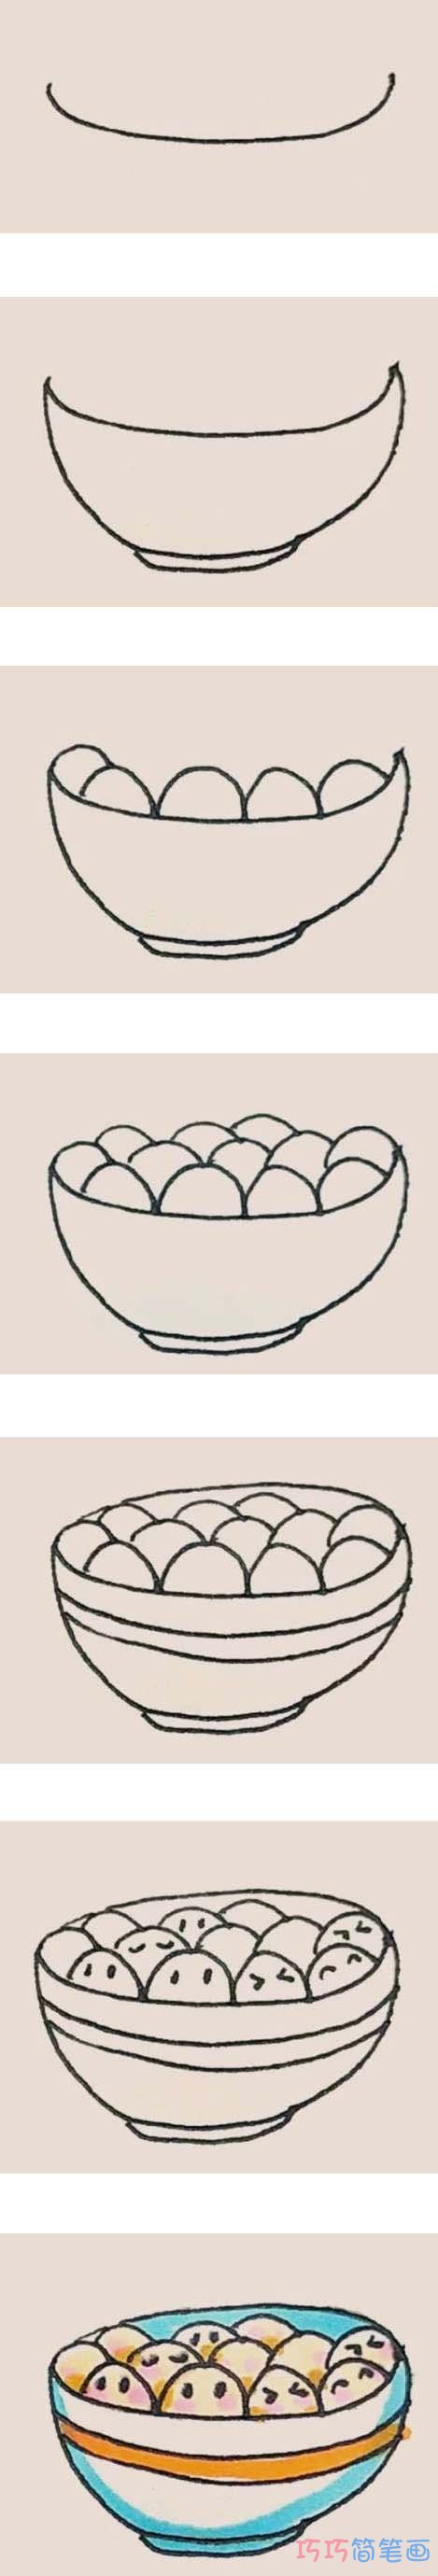 一碗汤圆的画法步骤图带颜色 汤圆简笔画图片